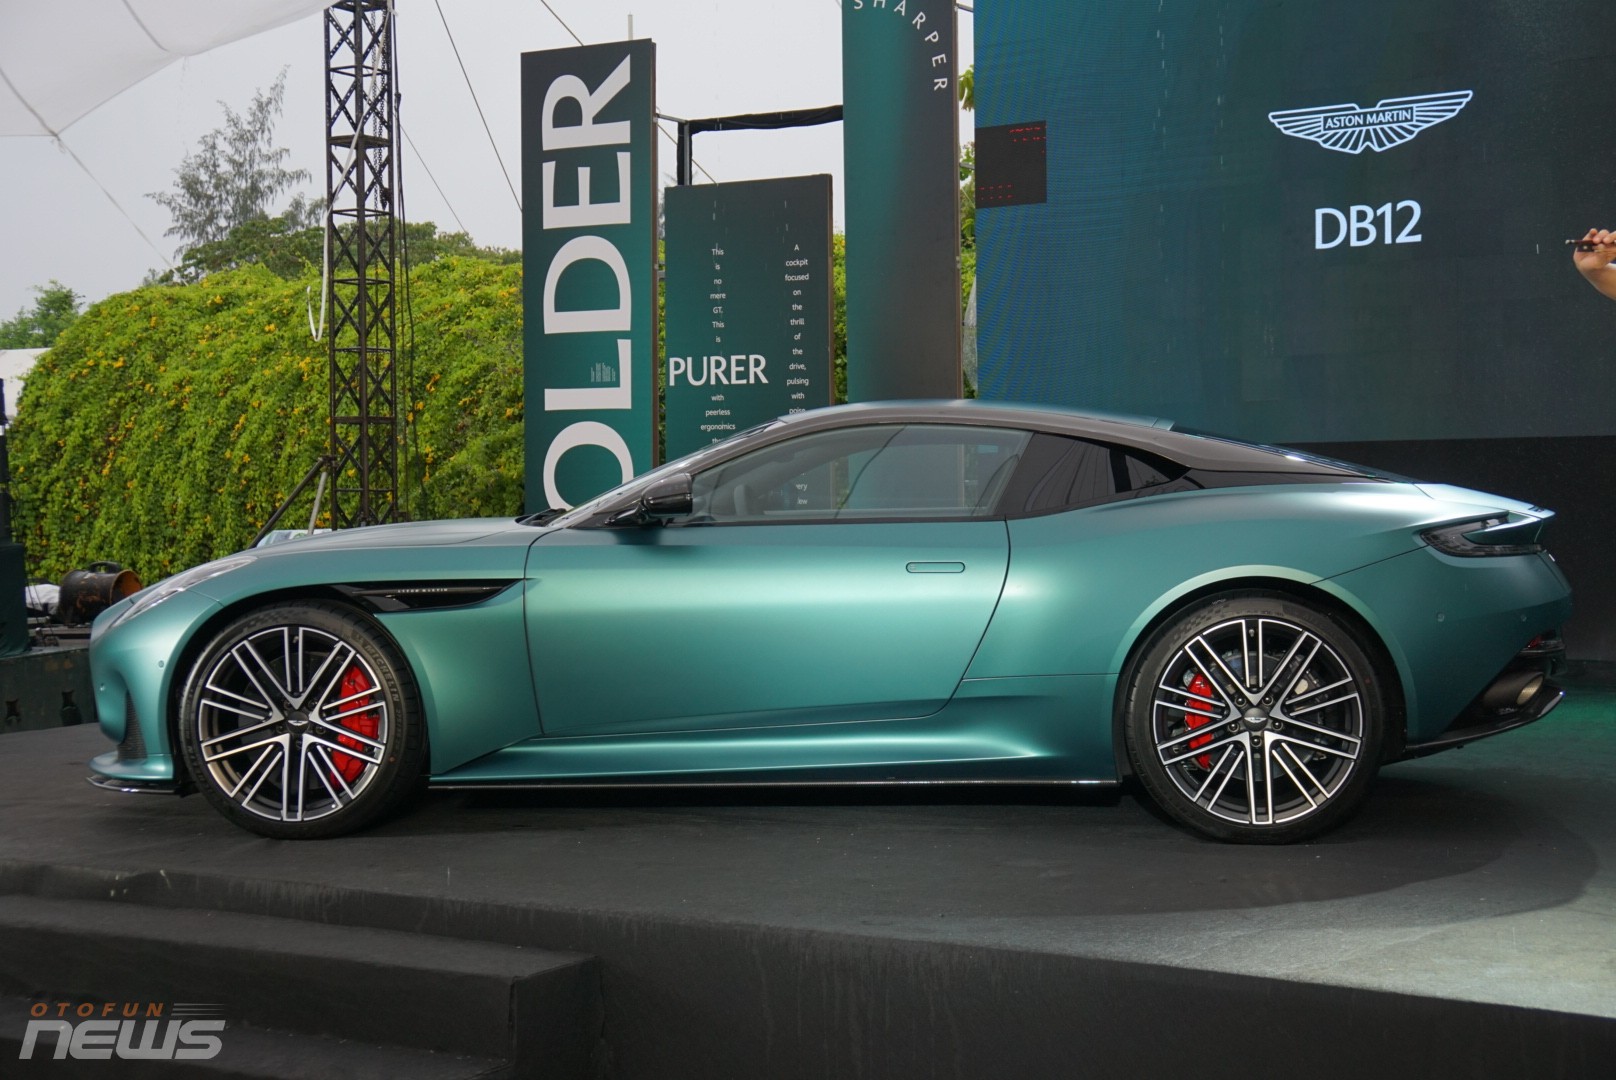 Aston Martin DB12 'chốt' giá từ 19,5 tỷ đồng tại Việt Nam